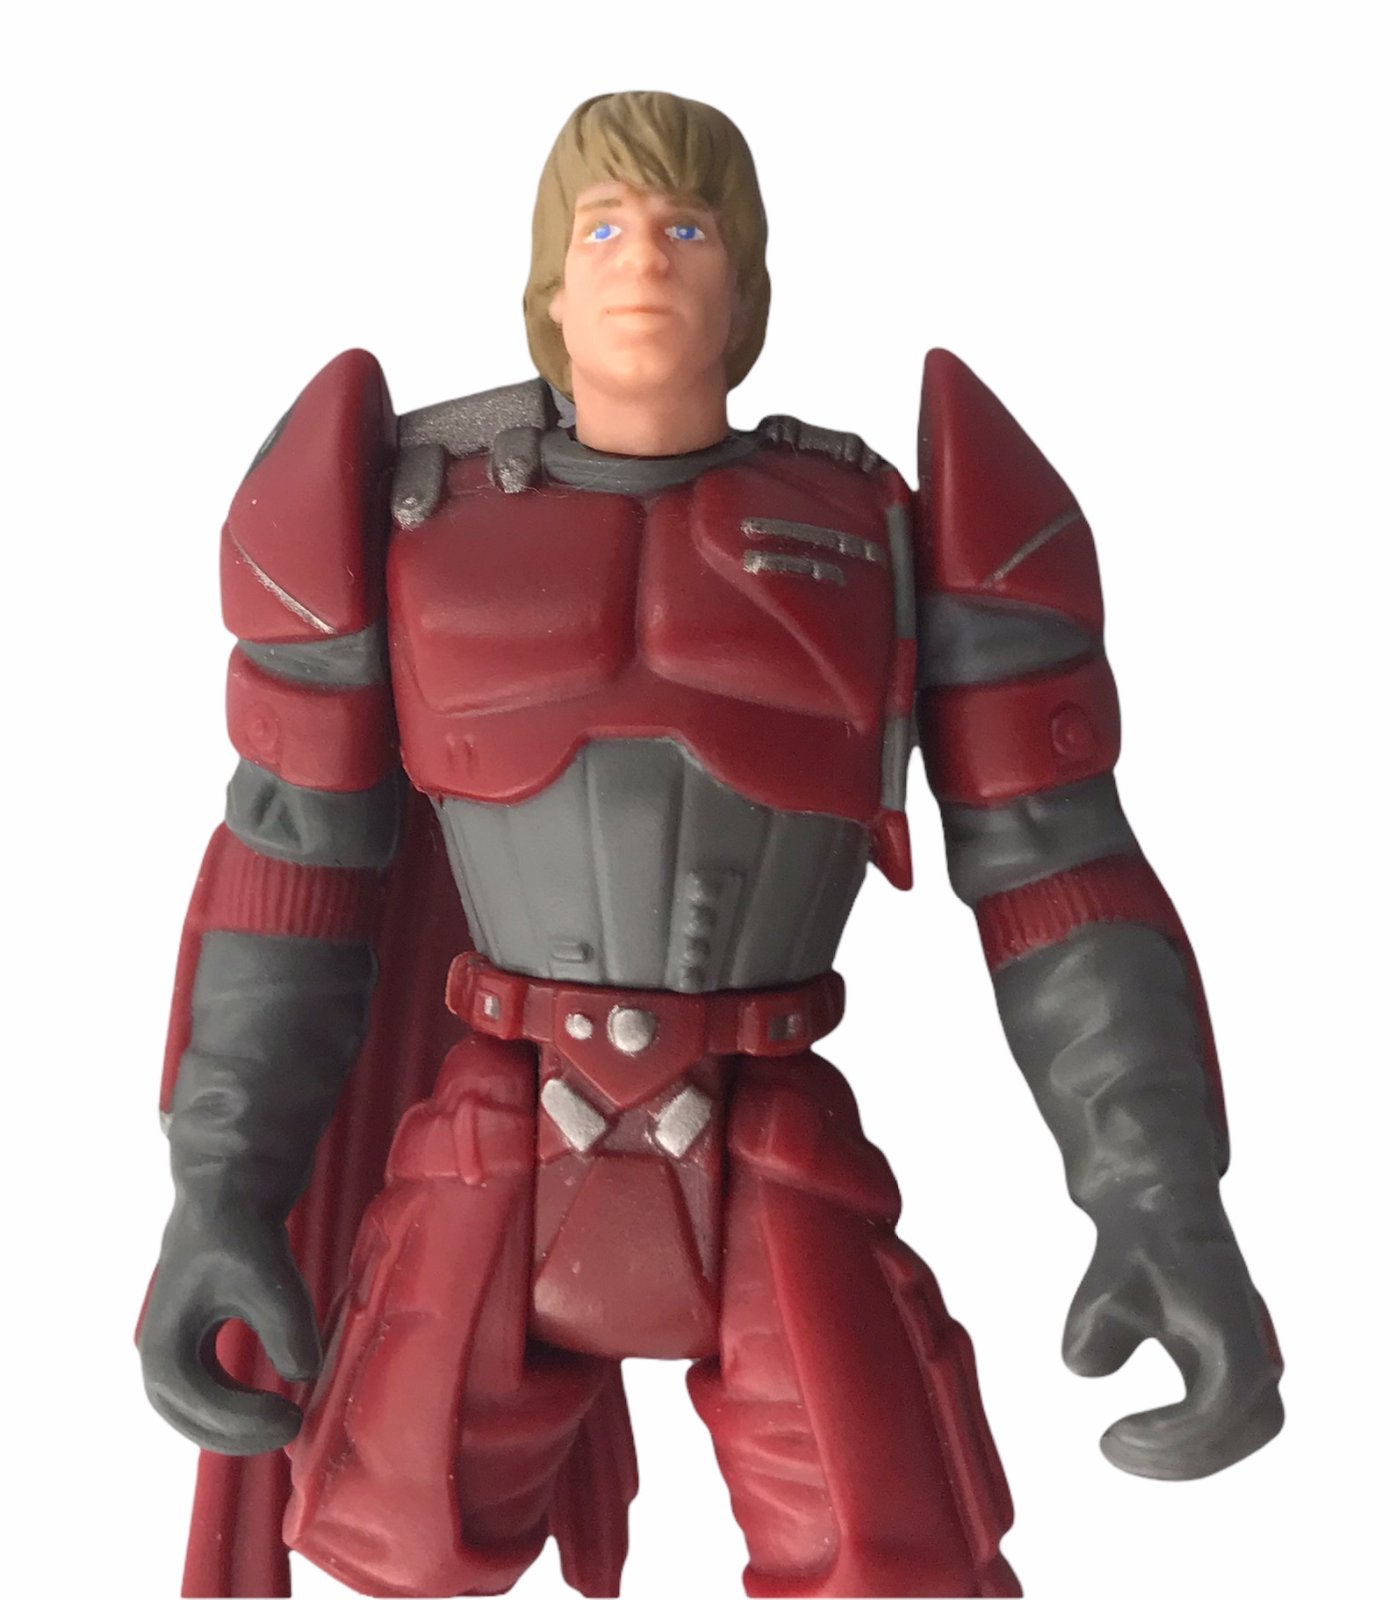 Star Wars Luke Skywalker in Imperial Guard Disguise 3 3/4 Inch Figure 1996